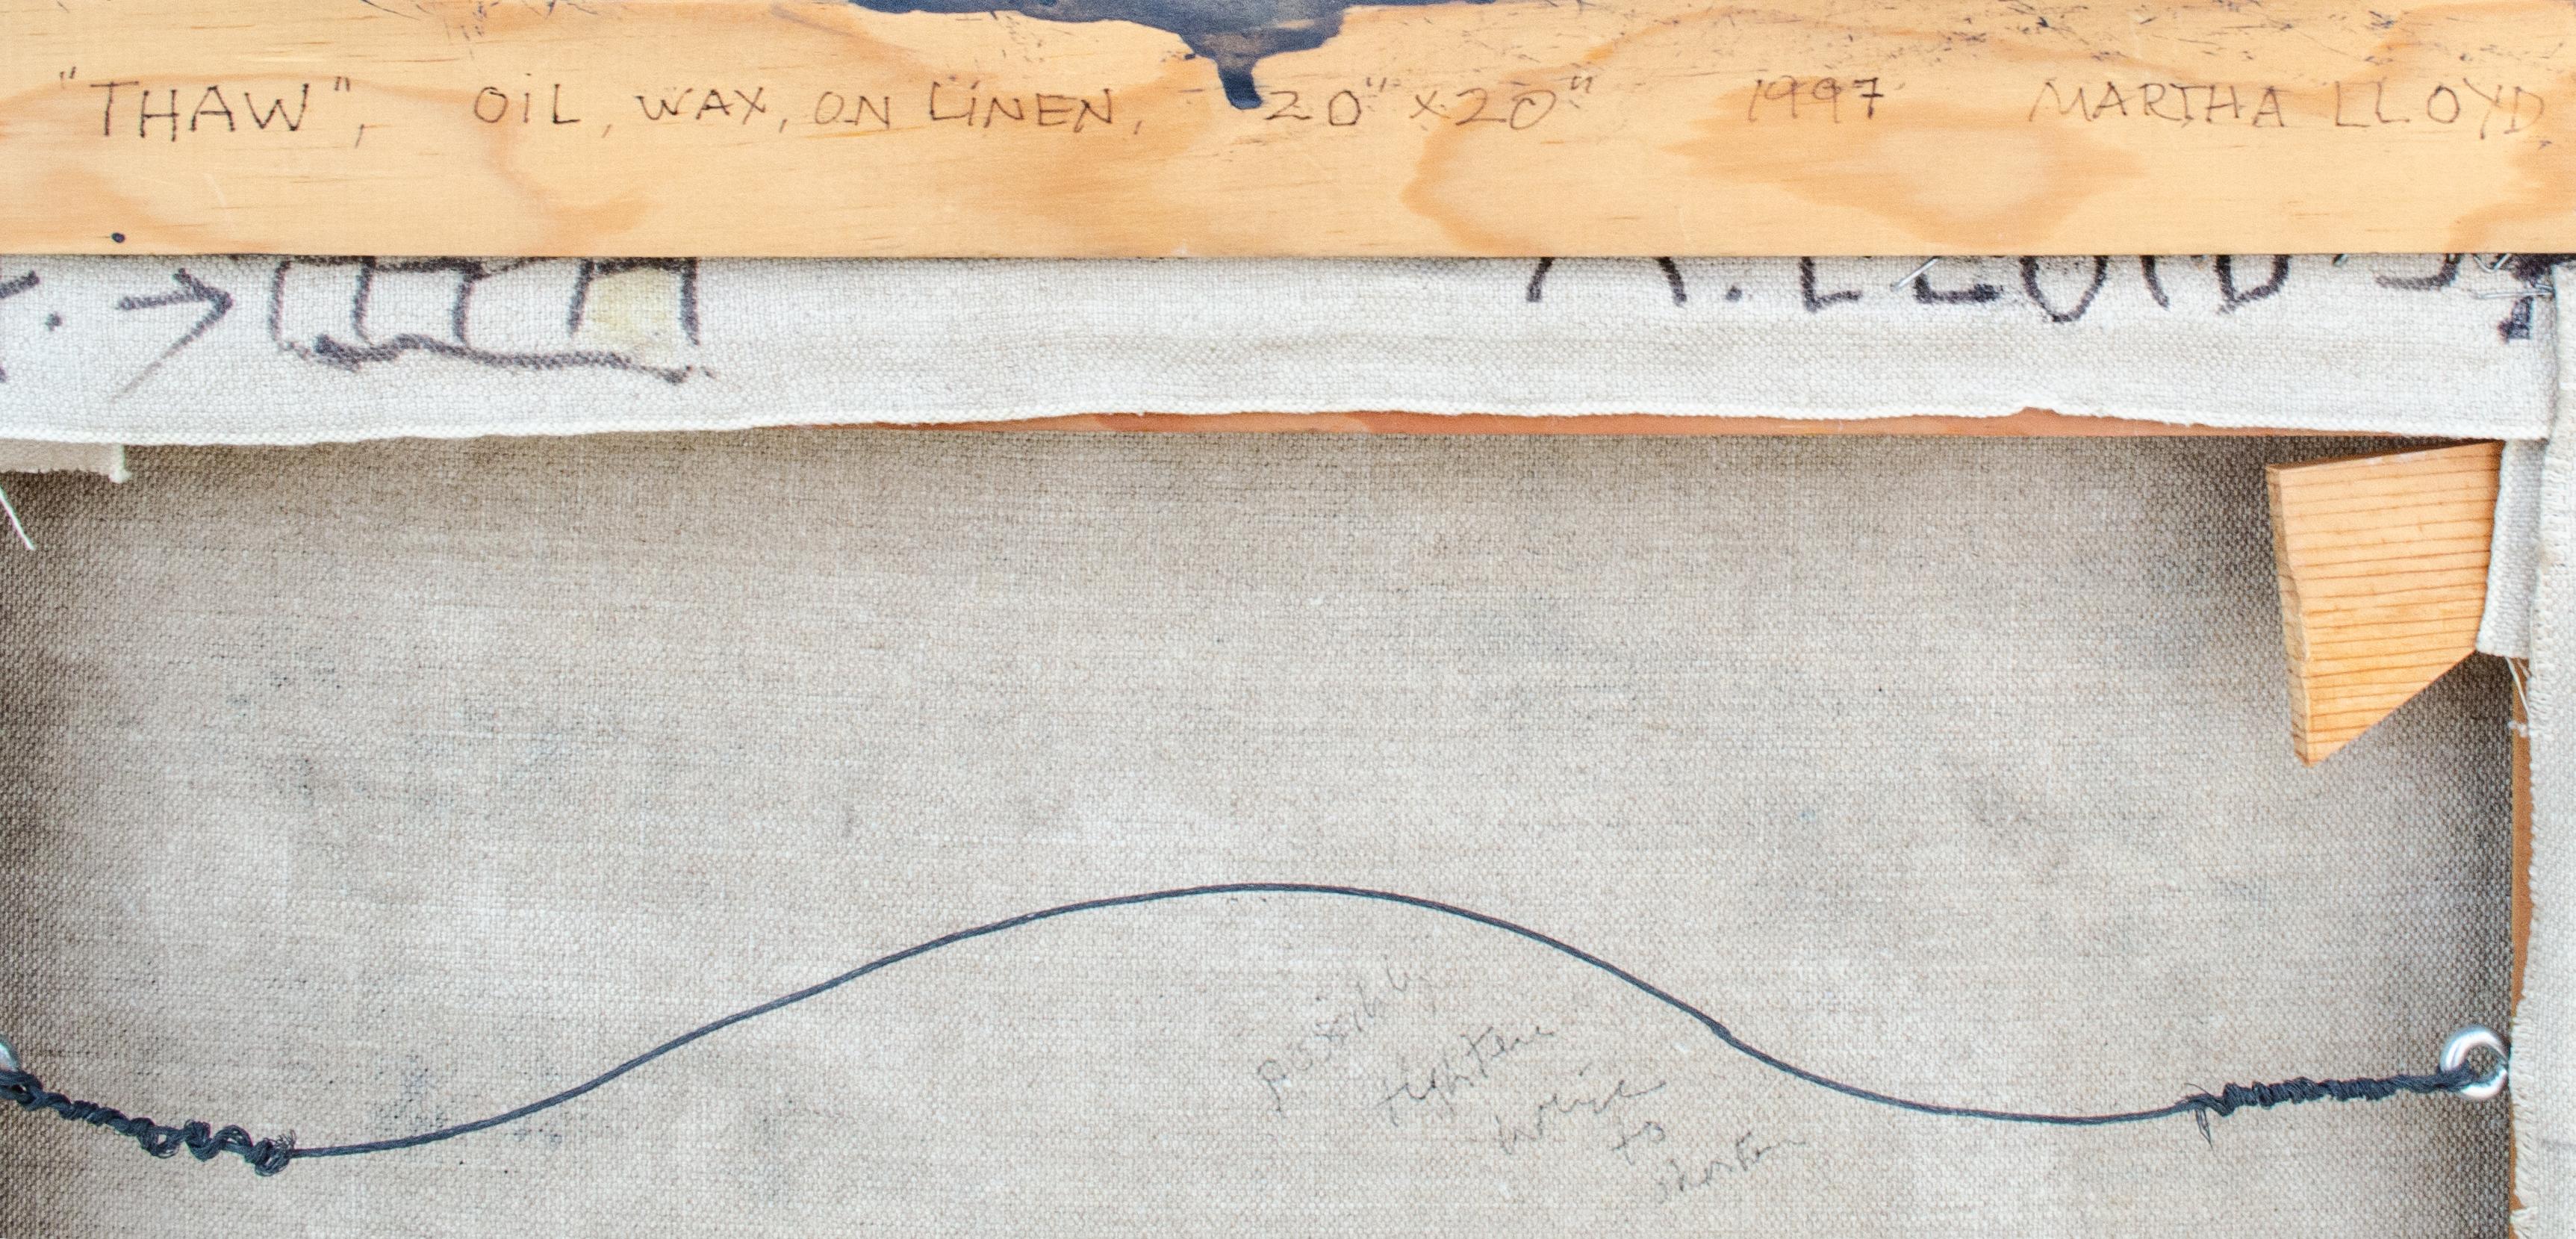 Martha Lloyd (American, 1927-2018)
Thaw, 1997
Oil and wax (encaustic) on canvas
20 x 20 in.
Framed: 21 1/4 x 21 1/4 x 1 3/4 in.
Inscribed verso

Provenance: 
Carrie Haddad Gallery, Hudson, NY

Martha Anne Lloyd was born in Washington, D.C. Always an